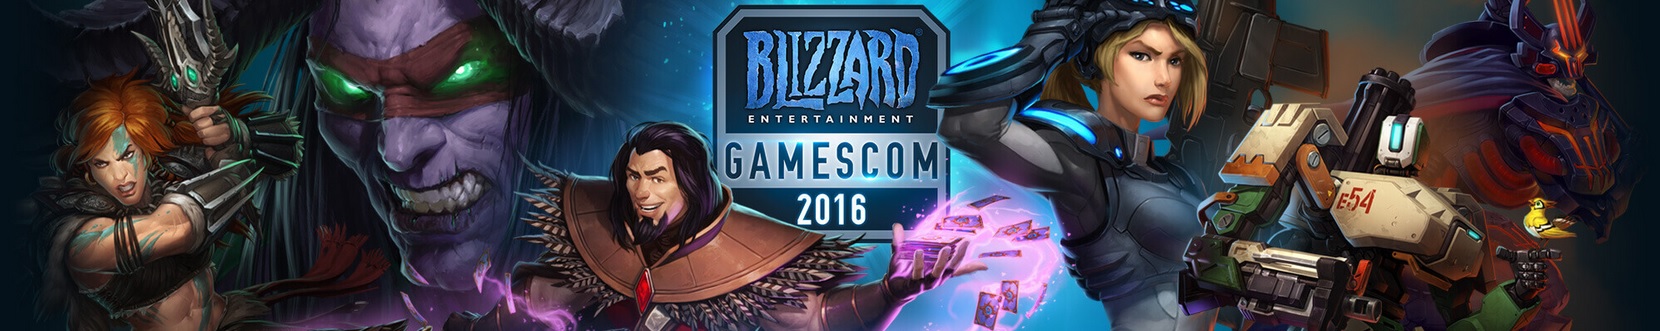 Blizzard Gamescon 2016